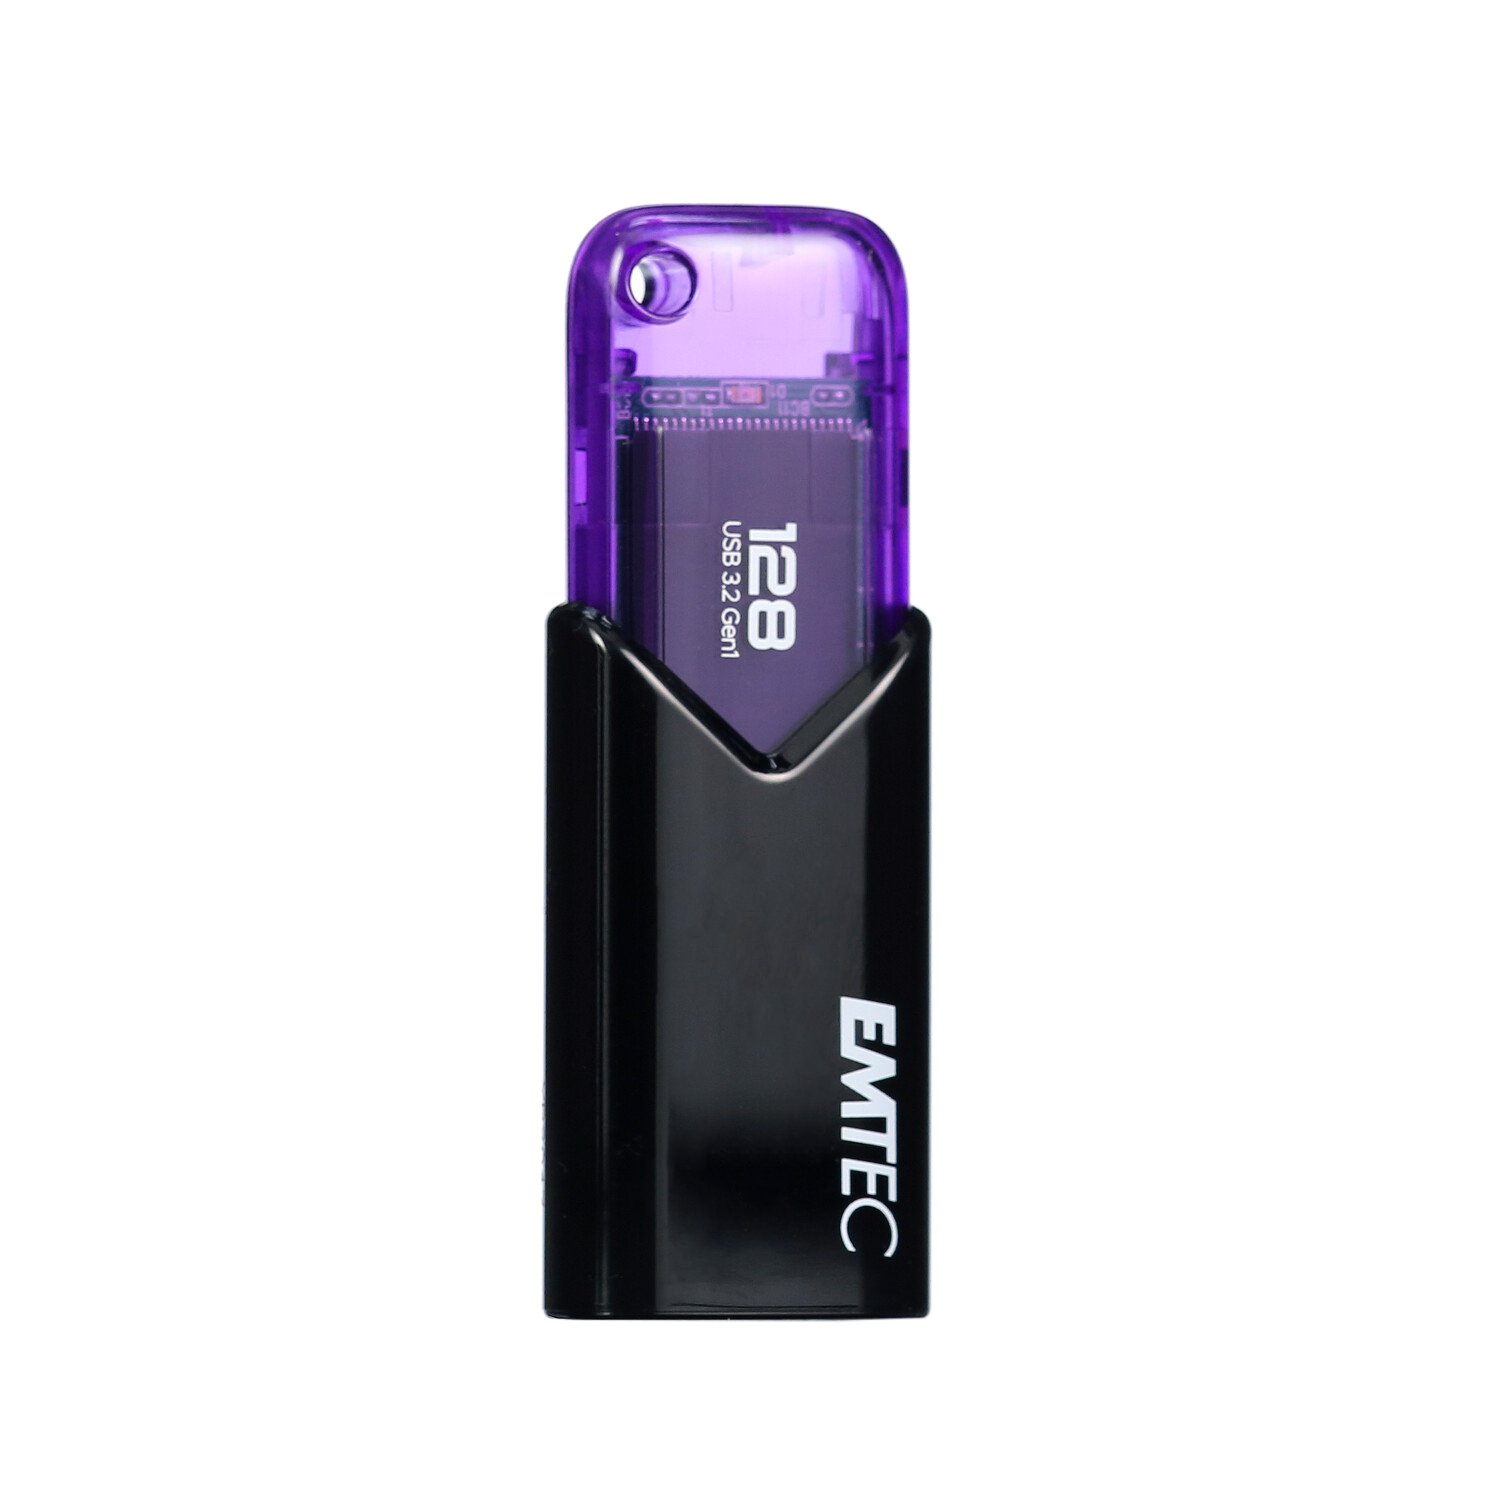 LESOGE Cle USB 128 Go Apple MFI Certified, 3 en 1 Clé USB Flash Drive Photo